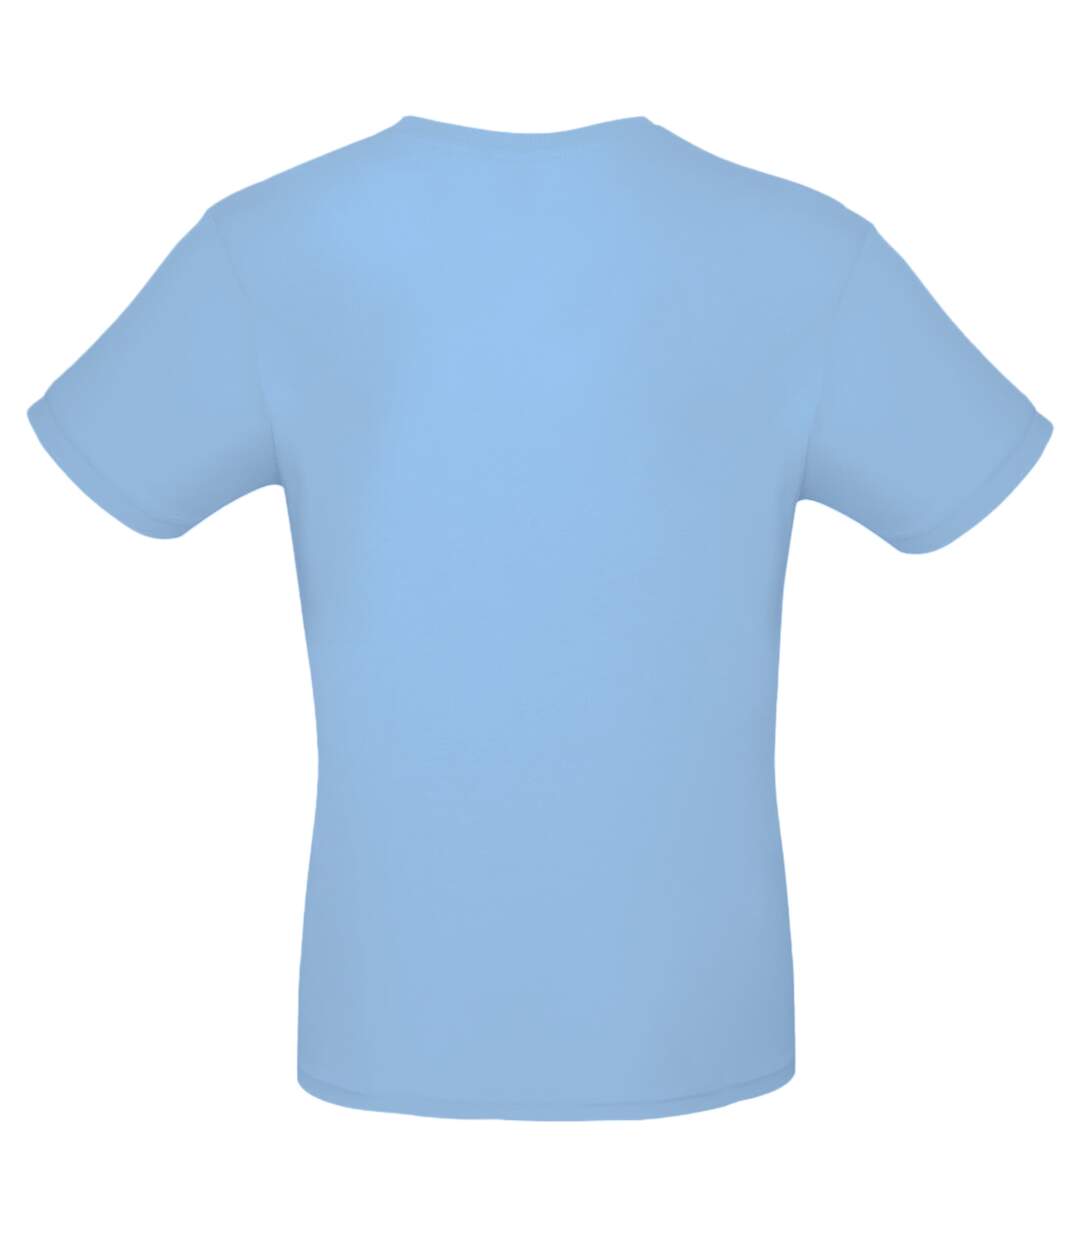 B&C - T-shirt manches courtes - Homme (Bleu ciel) - UTBC3910